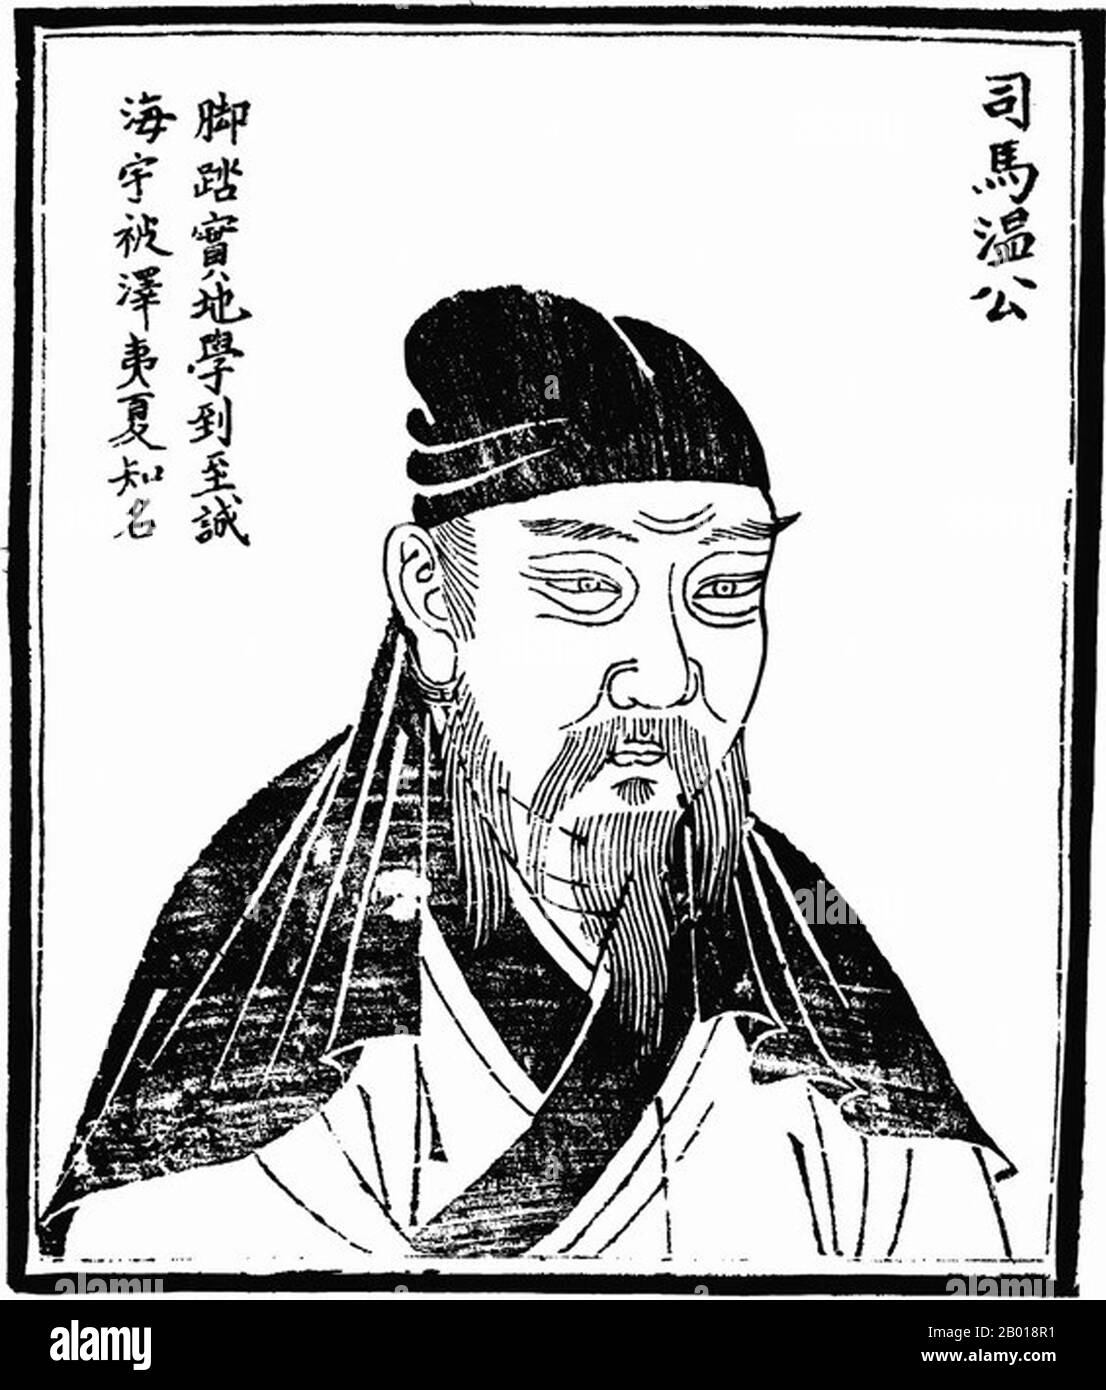 China: Sima Guang (17. November 1019 - 11. Oktober 1086), eine chinesische Historikerin, Gelehrte und hohe Kanzlerin der Northen Song Dynastie (960-1127). Holzschnitt aus 'Bilder alter Menschen in der Geschichte', c. 1498. Sima Guang, Höflichkeitsname Junshi und Künstlername Yusou, wurde 1019 im heutigen Yuncheng, Shanxi, in einer wohlhabenden Familie geboren und erlangte frühe Erfolge als Gelehrter und Offizier. Als er gerade zwanzig Jahre alt war, bestand er die kaiserliche Prüfung mit dem höchsten Rang von jinshi (Großstädtischen Absolvent) und verbrachte die nächsten Jahre in offiziellen Positionen. Stockfoto